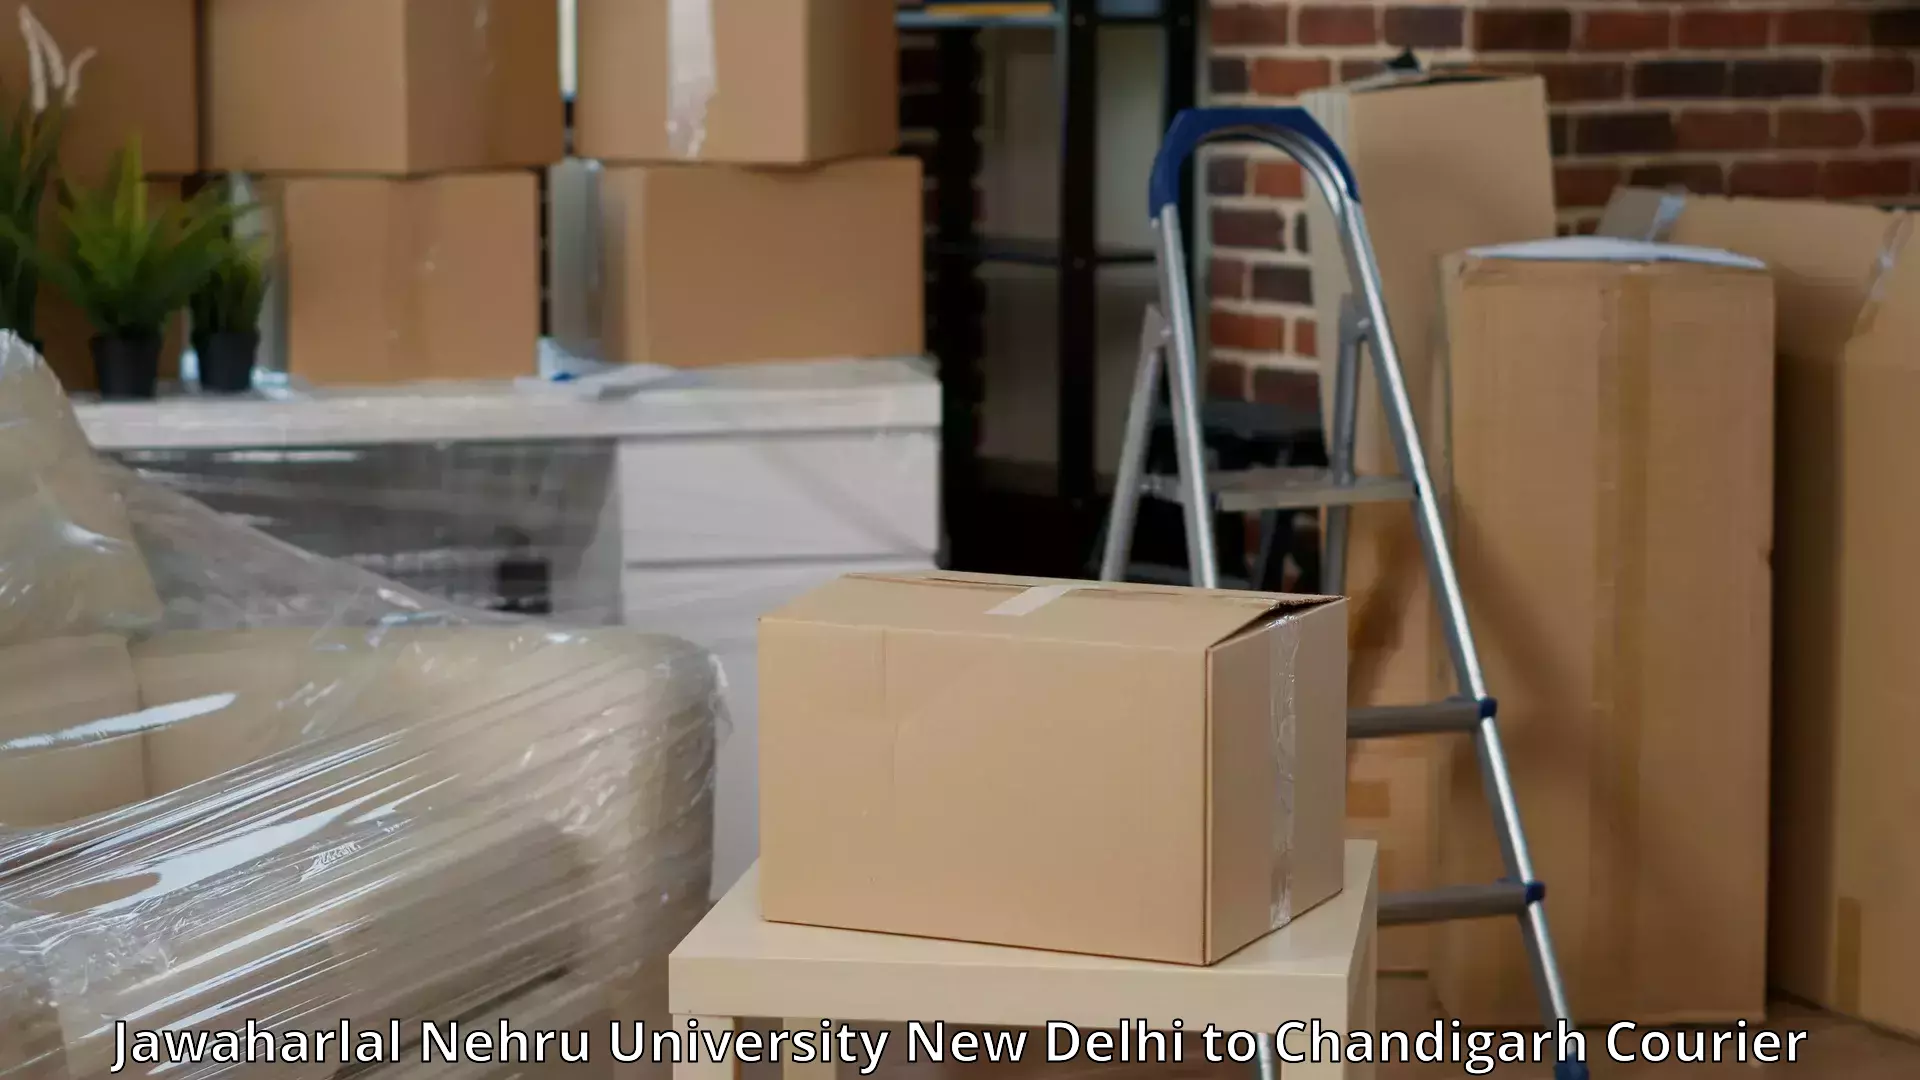 Trusted household movers Jawaharlal Nehru University New Delhi to Chandigarh